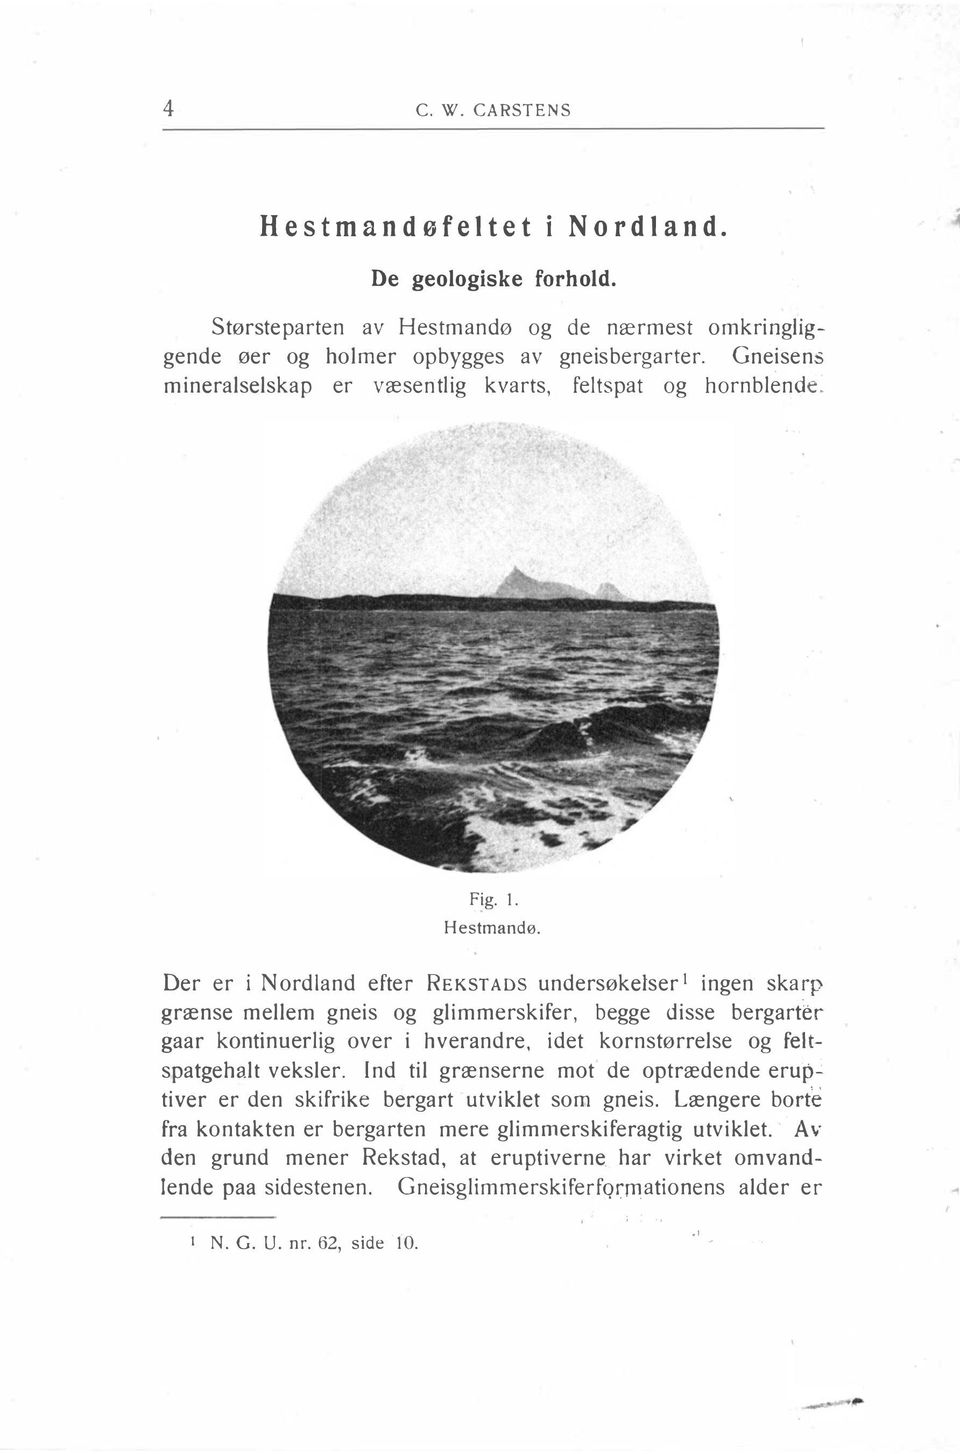 Der er i Nordland efter REKST ADS undersøkelser 1 ingen skarp grænse mellem gneis og glimmerskifer, begge disse bergart r gaar kontinuerlig over i hverandre, idet kornstørrelse og feltspatgehalt